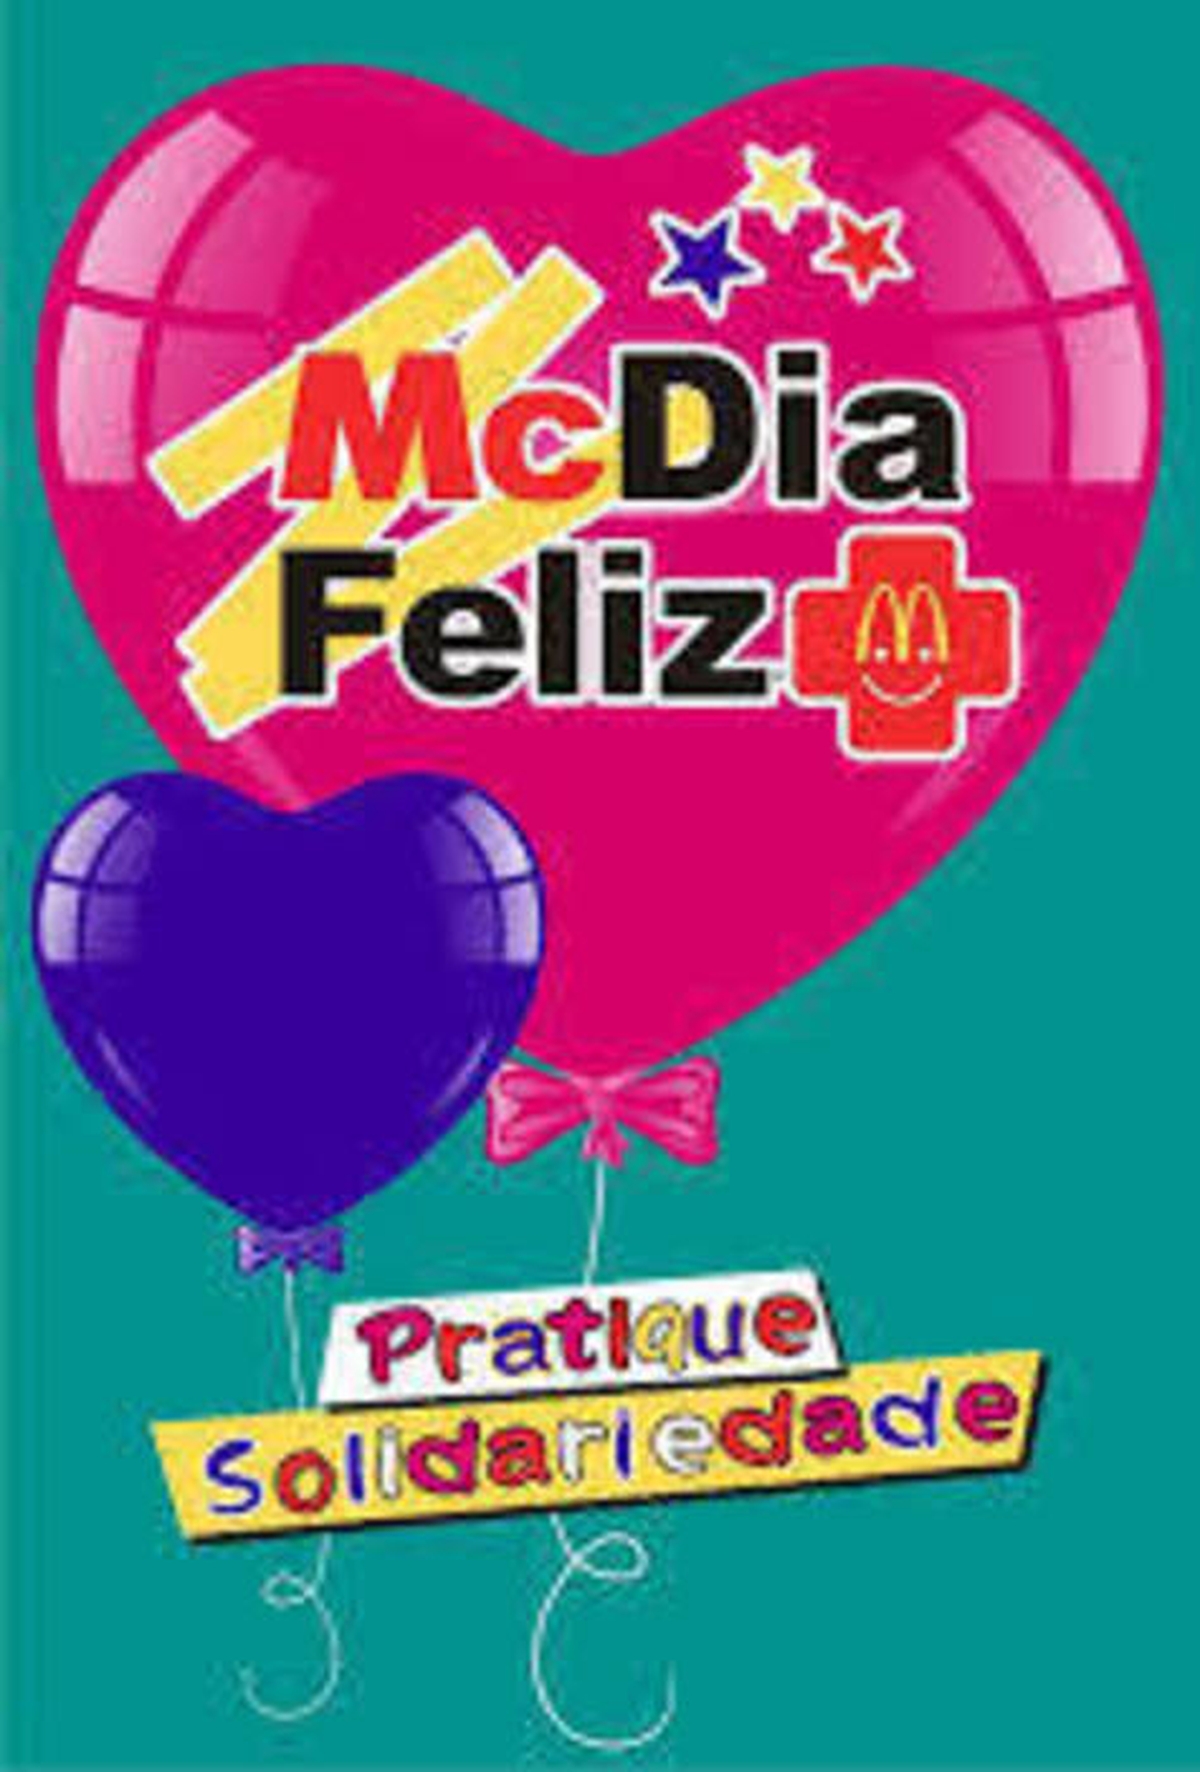 McDia Feliz 2014 - Ribeirão Preto